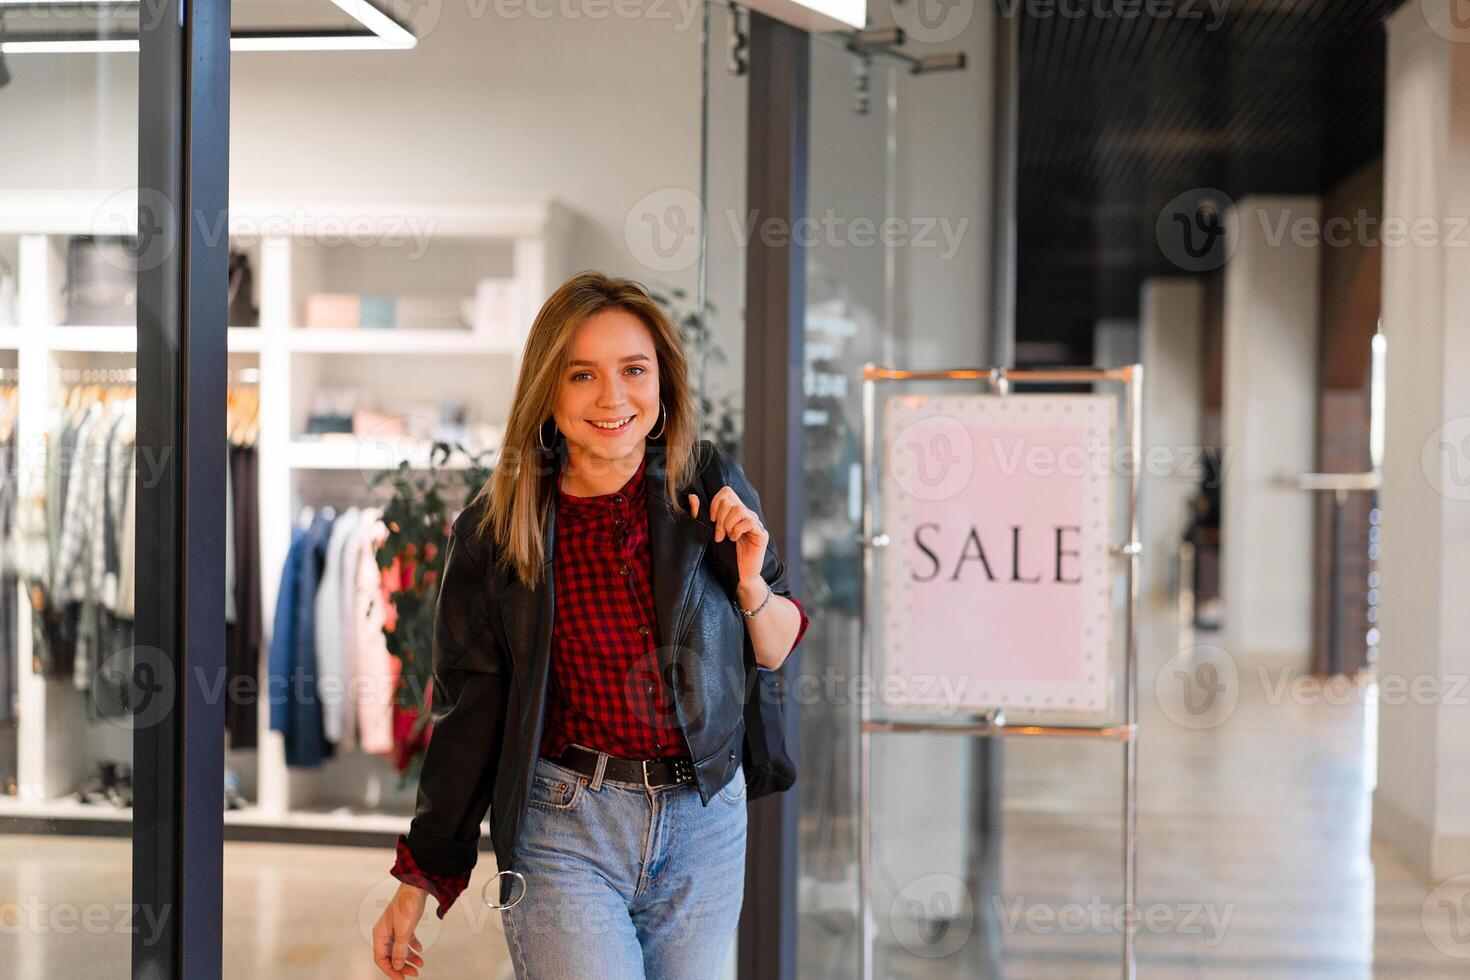 Jeune magnifique fille va en dehors Vêtements boutique avec achats. saison vente content Jeune adulte femelle photo